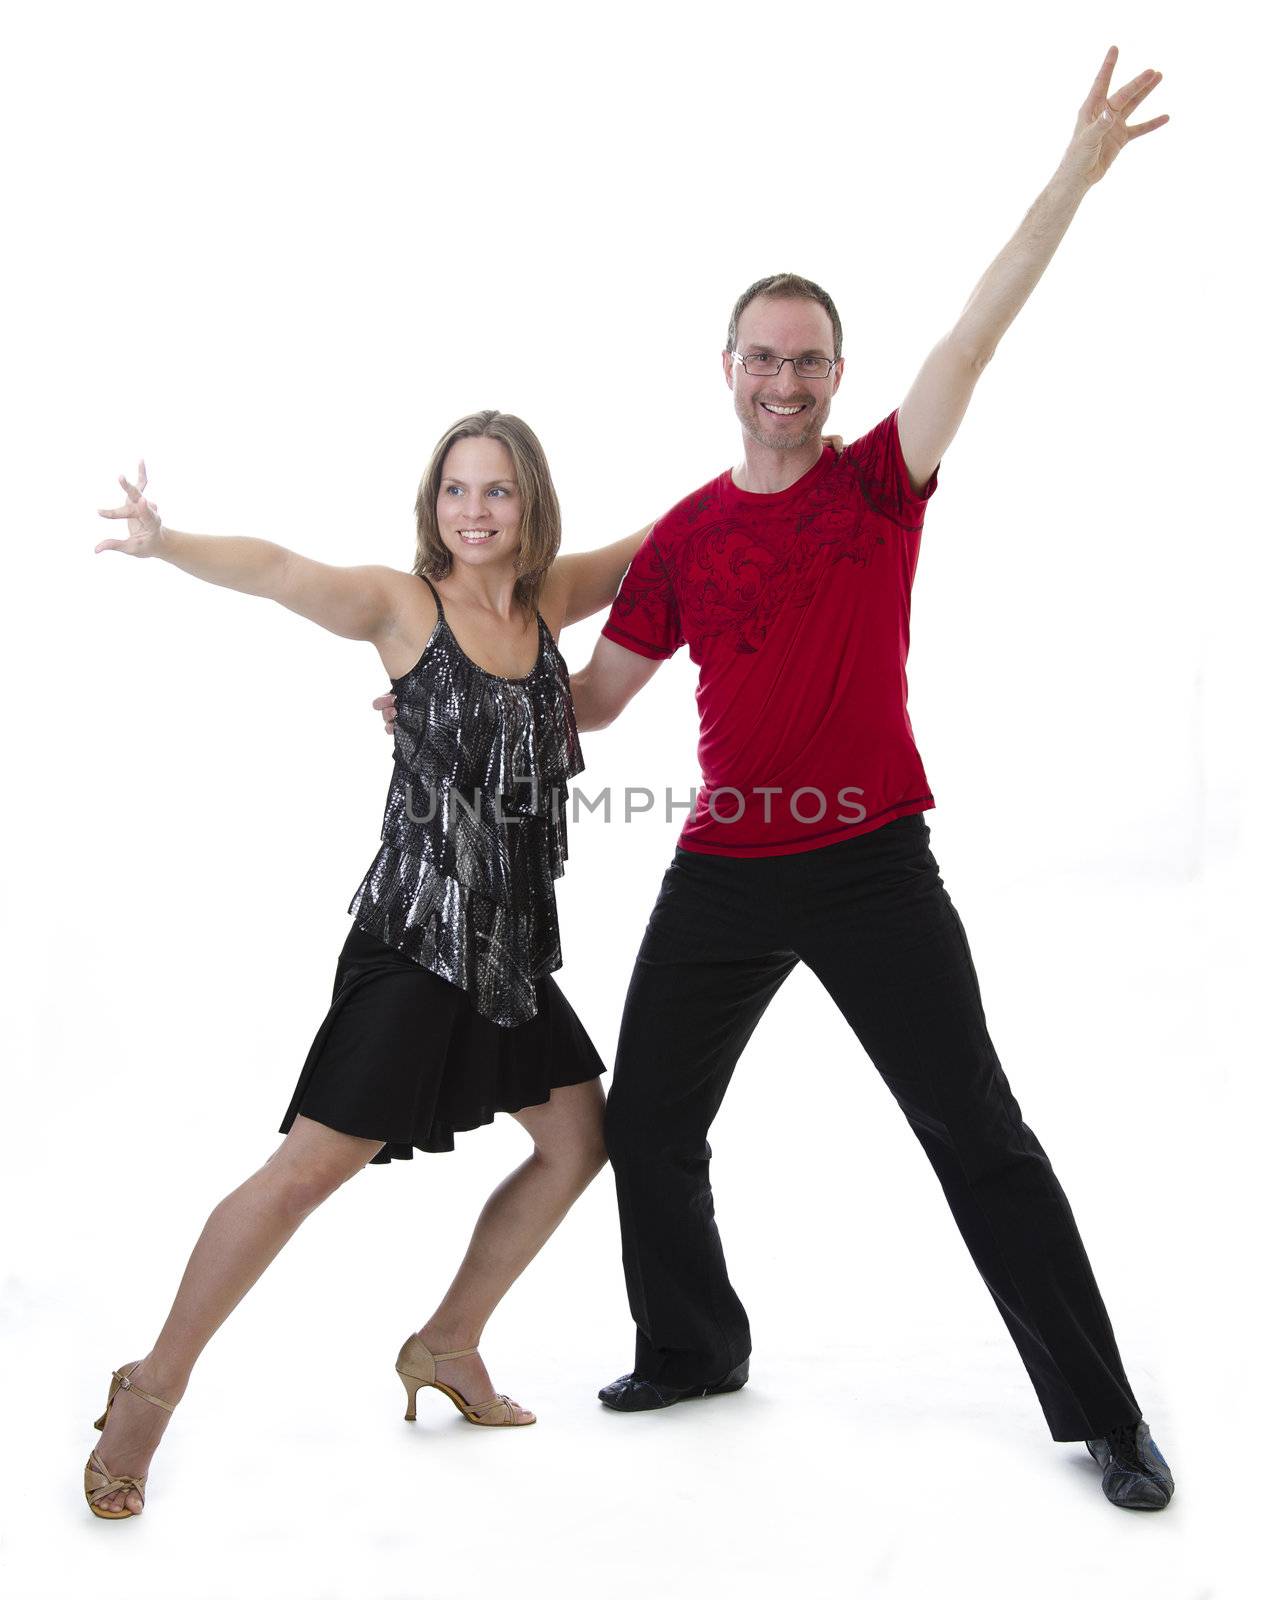 Dancing couple by mypstudio